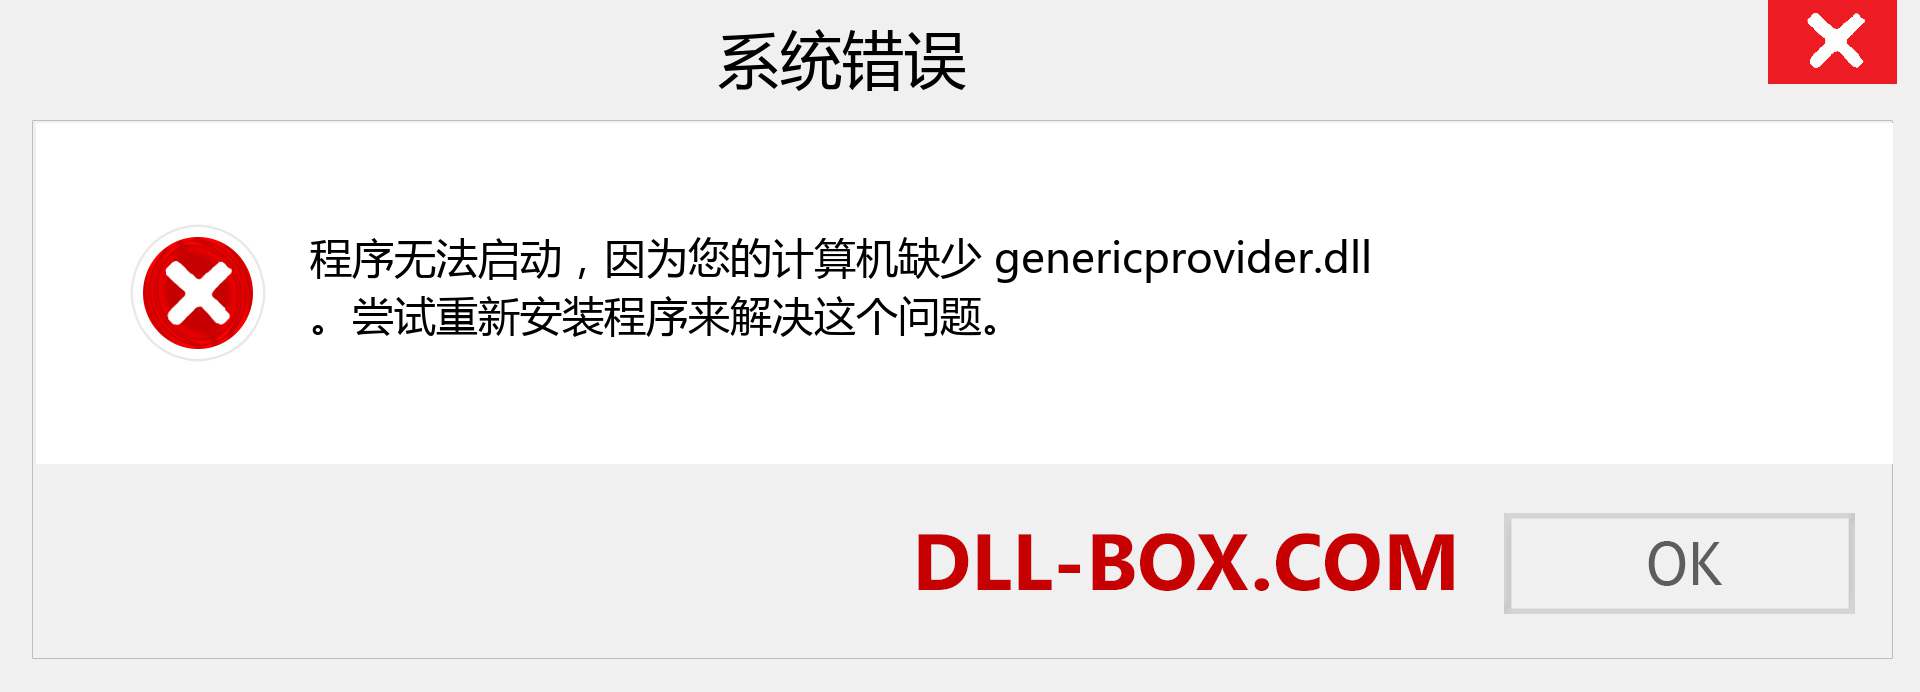 genericprovider.dll 文件丢失？。 适用于 Windows 7、8、10 的下载 - 修复 Windows、照片、图像上的 genericprovider dll 丢失错误